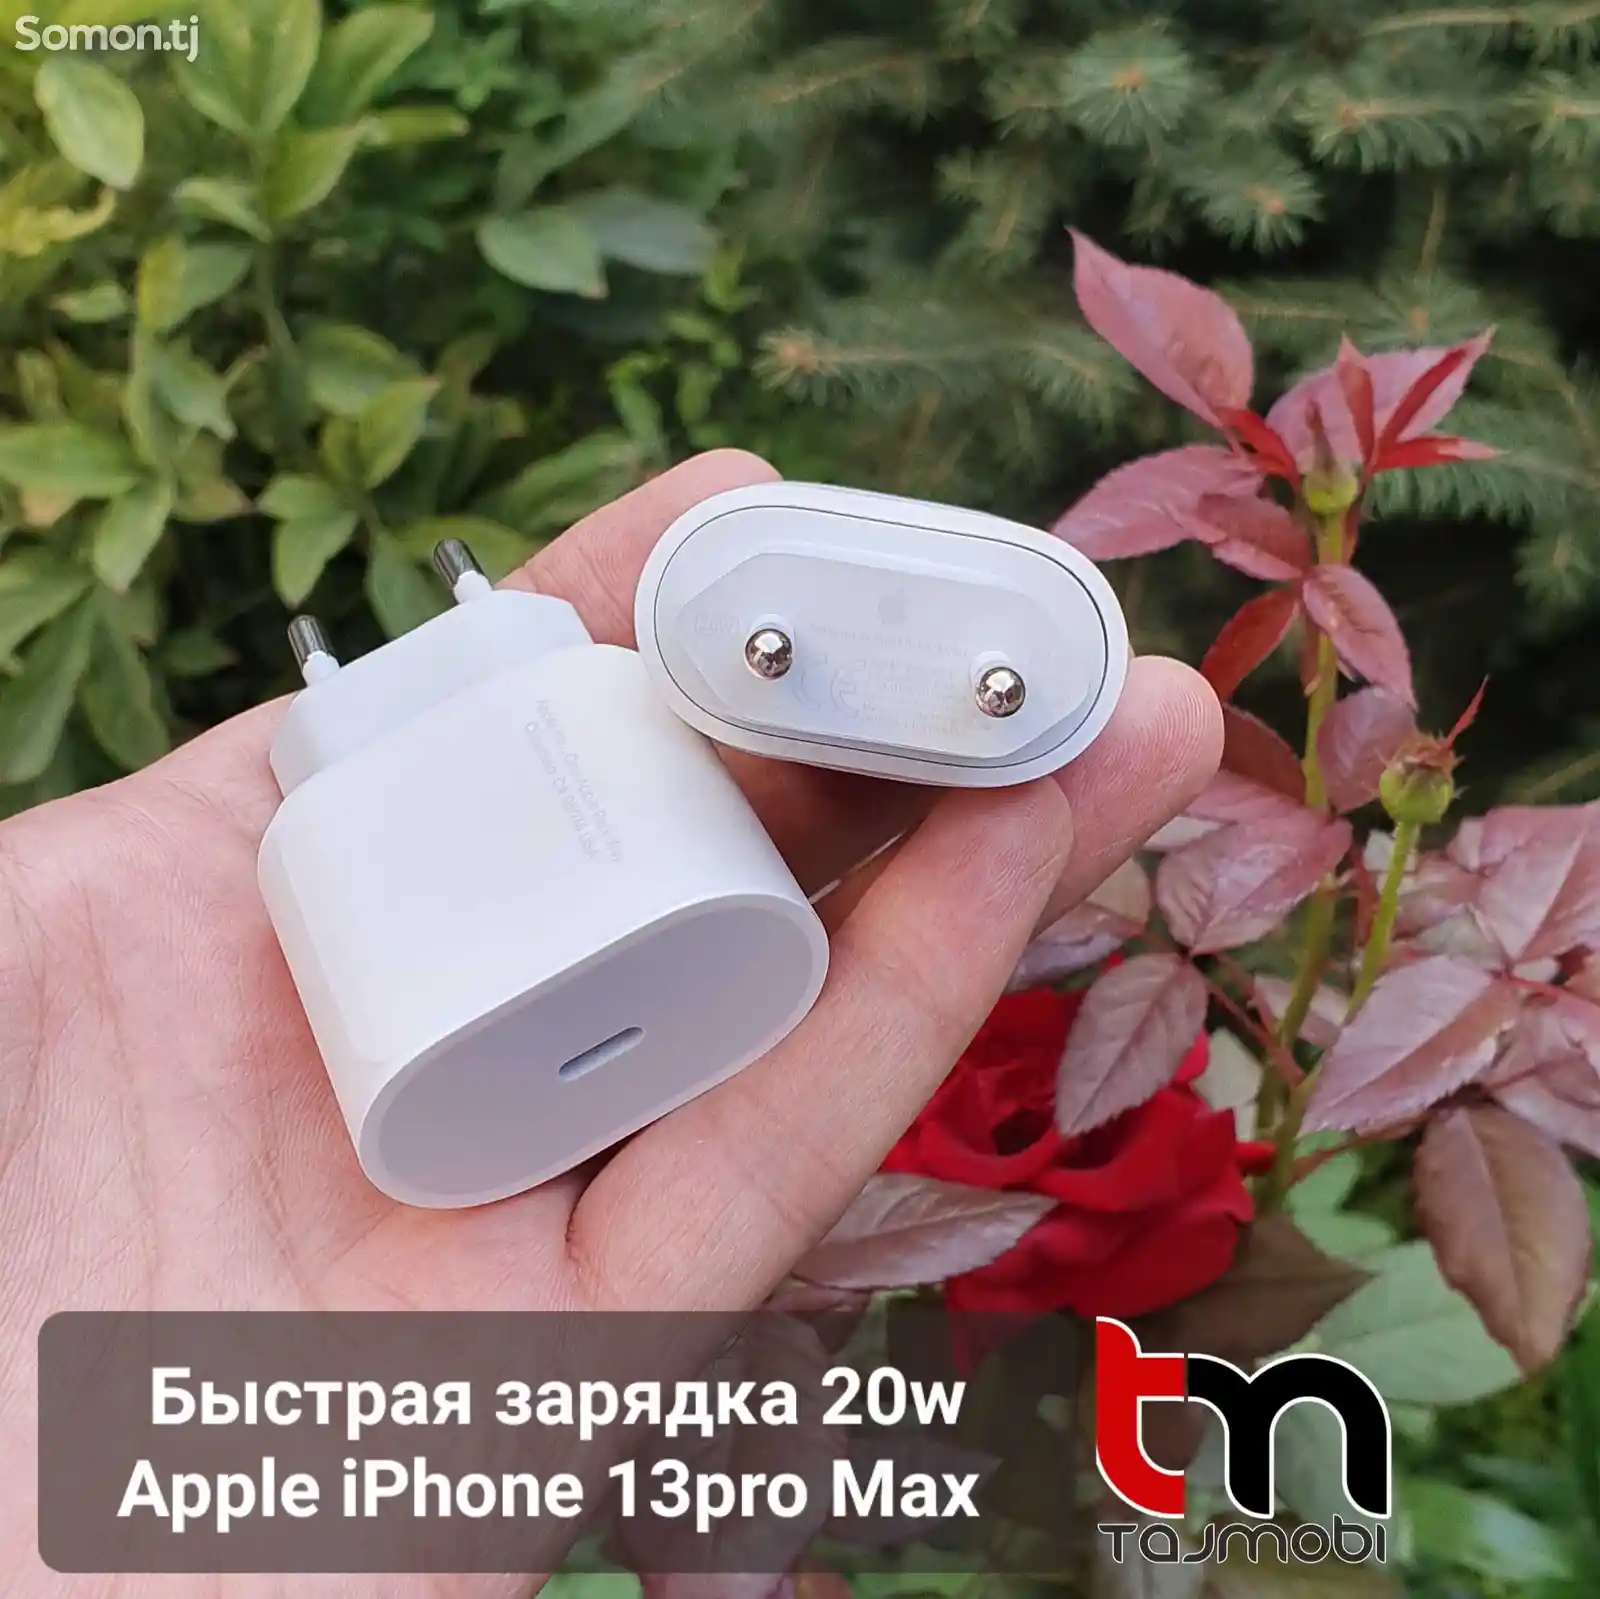 Быстрая зарядка 20w Apple iPhone 13pro Max